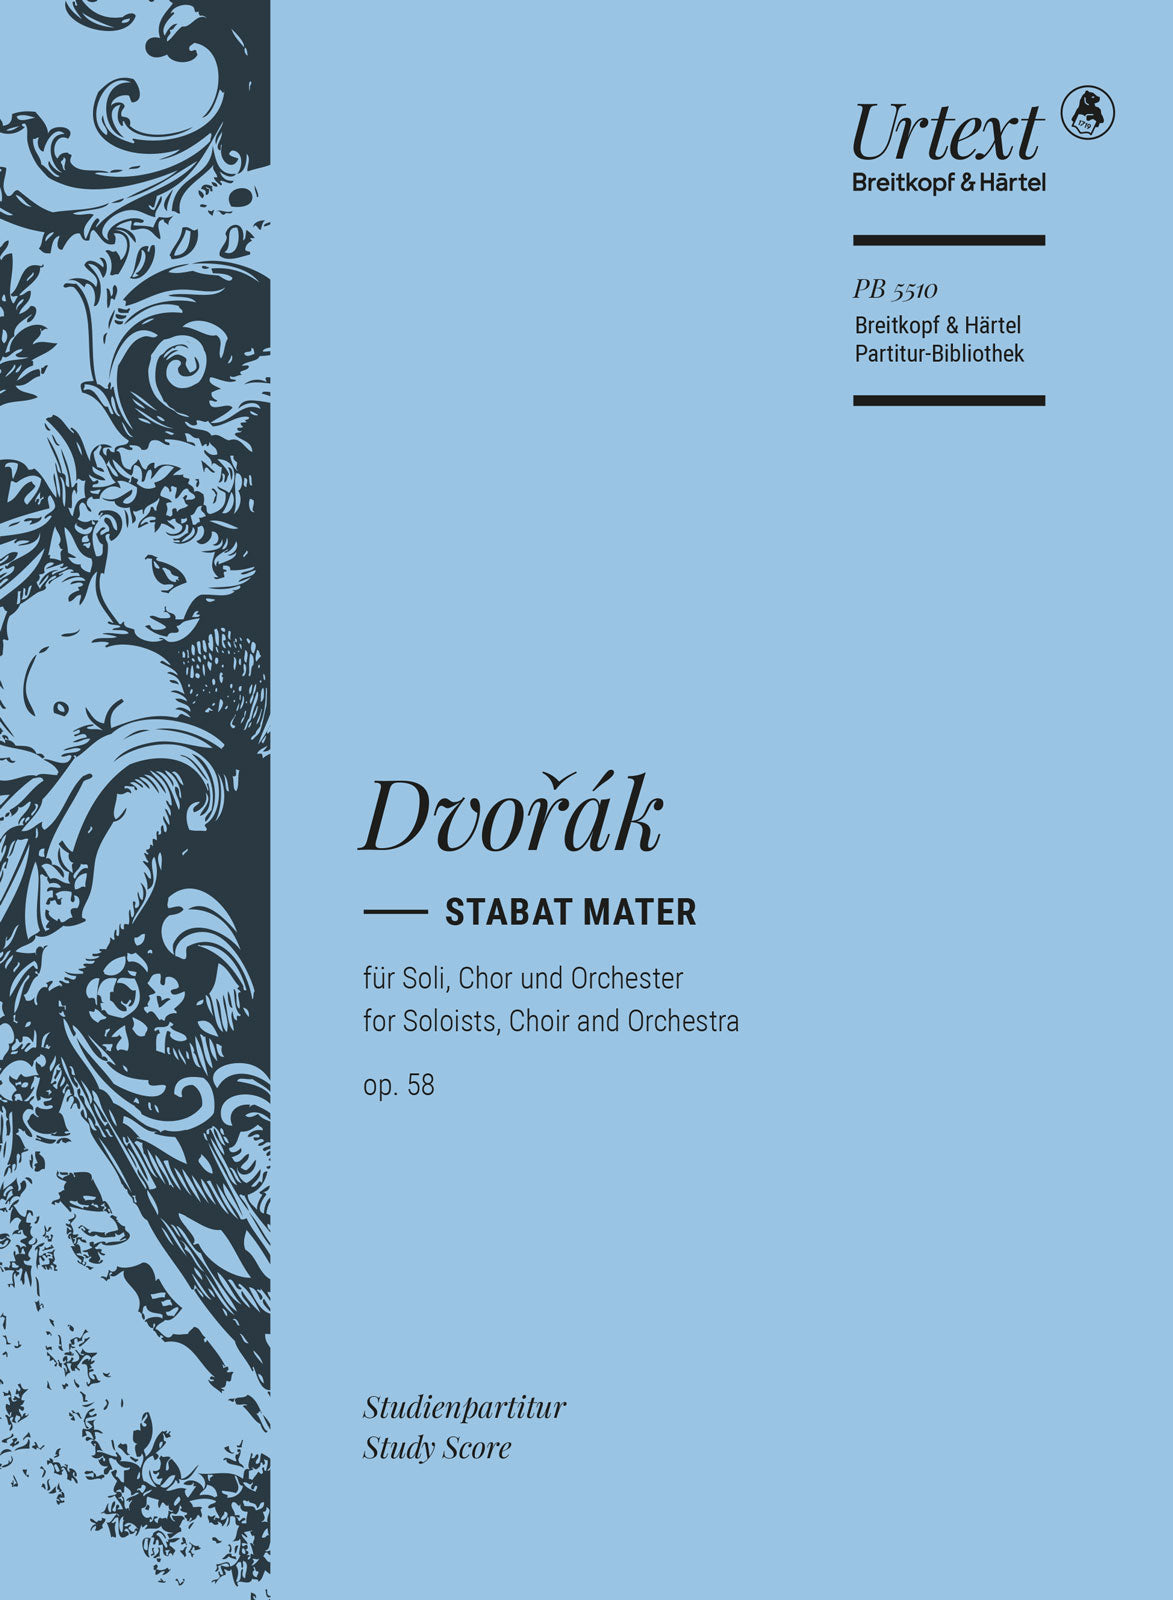 Dvorak: Stabat mater Op. 58 study score